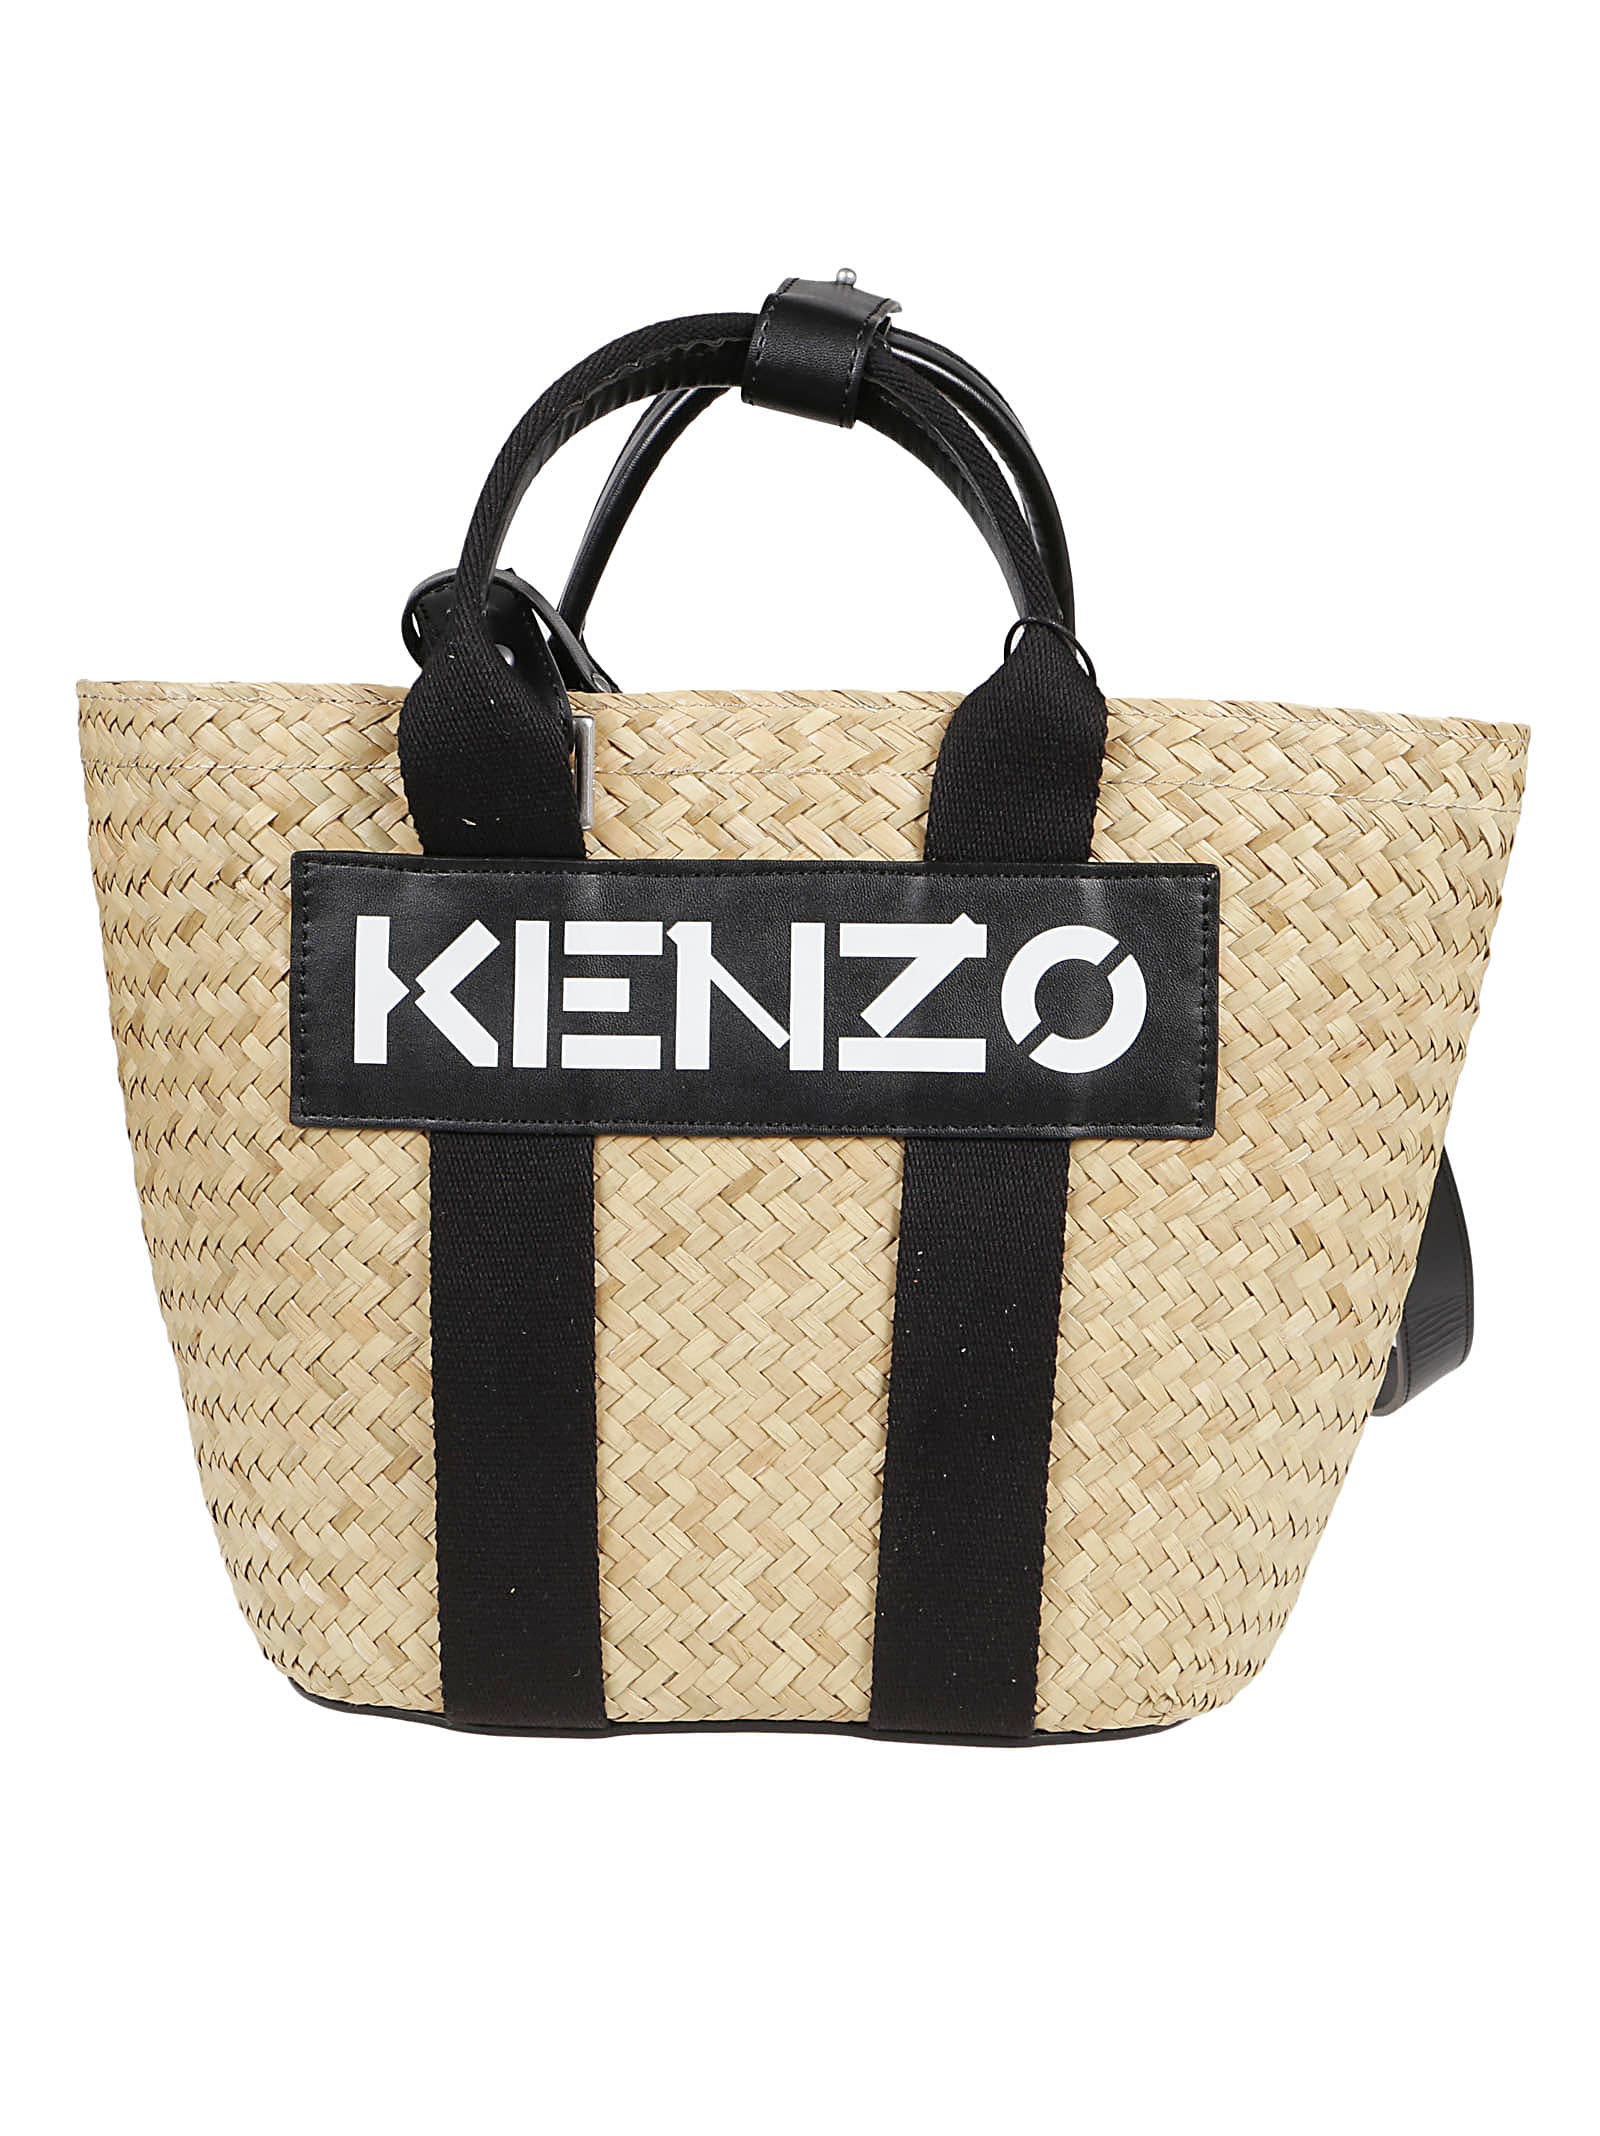 Kenzo Small Basket Bag